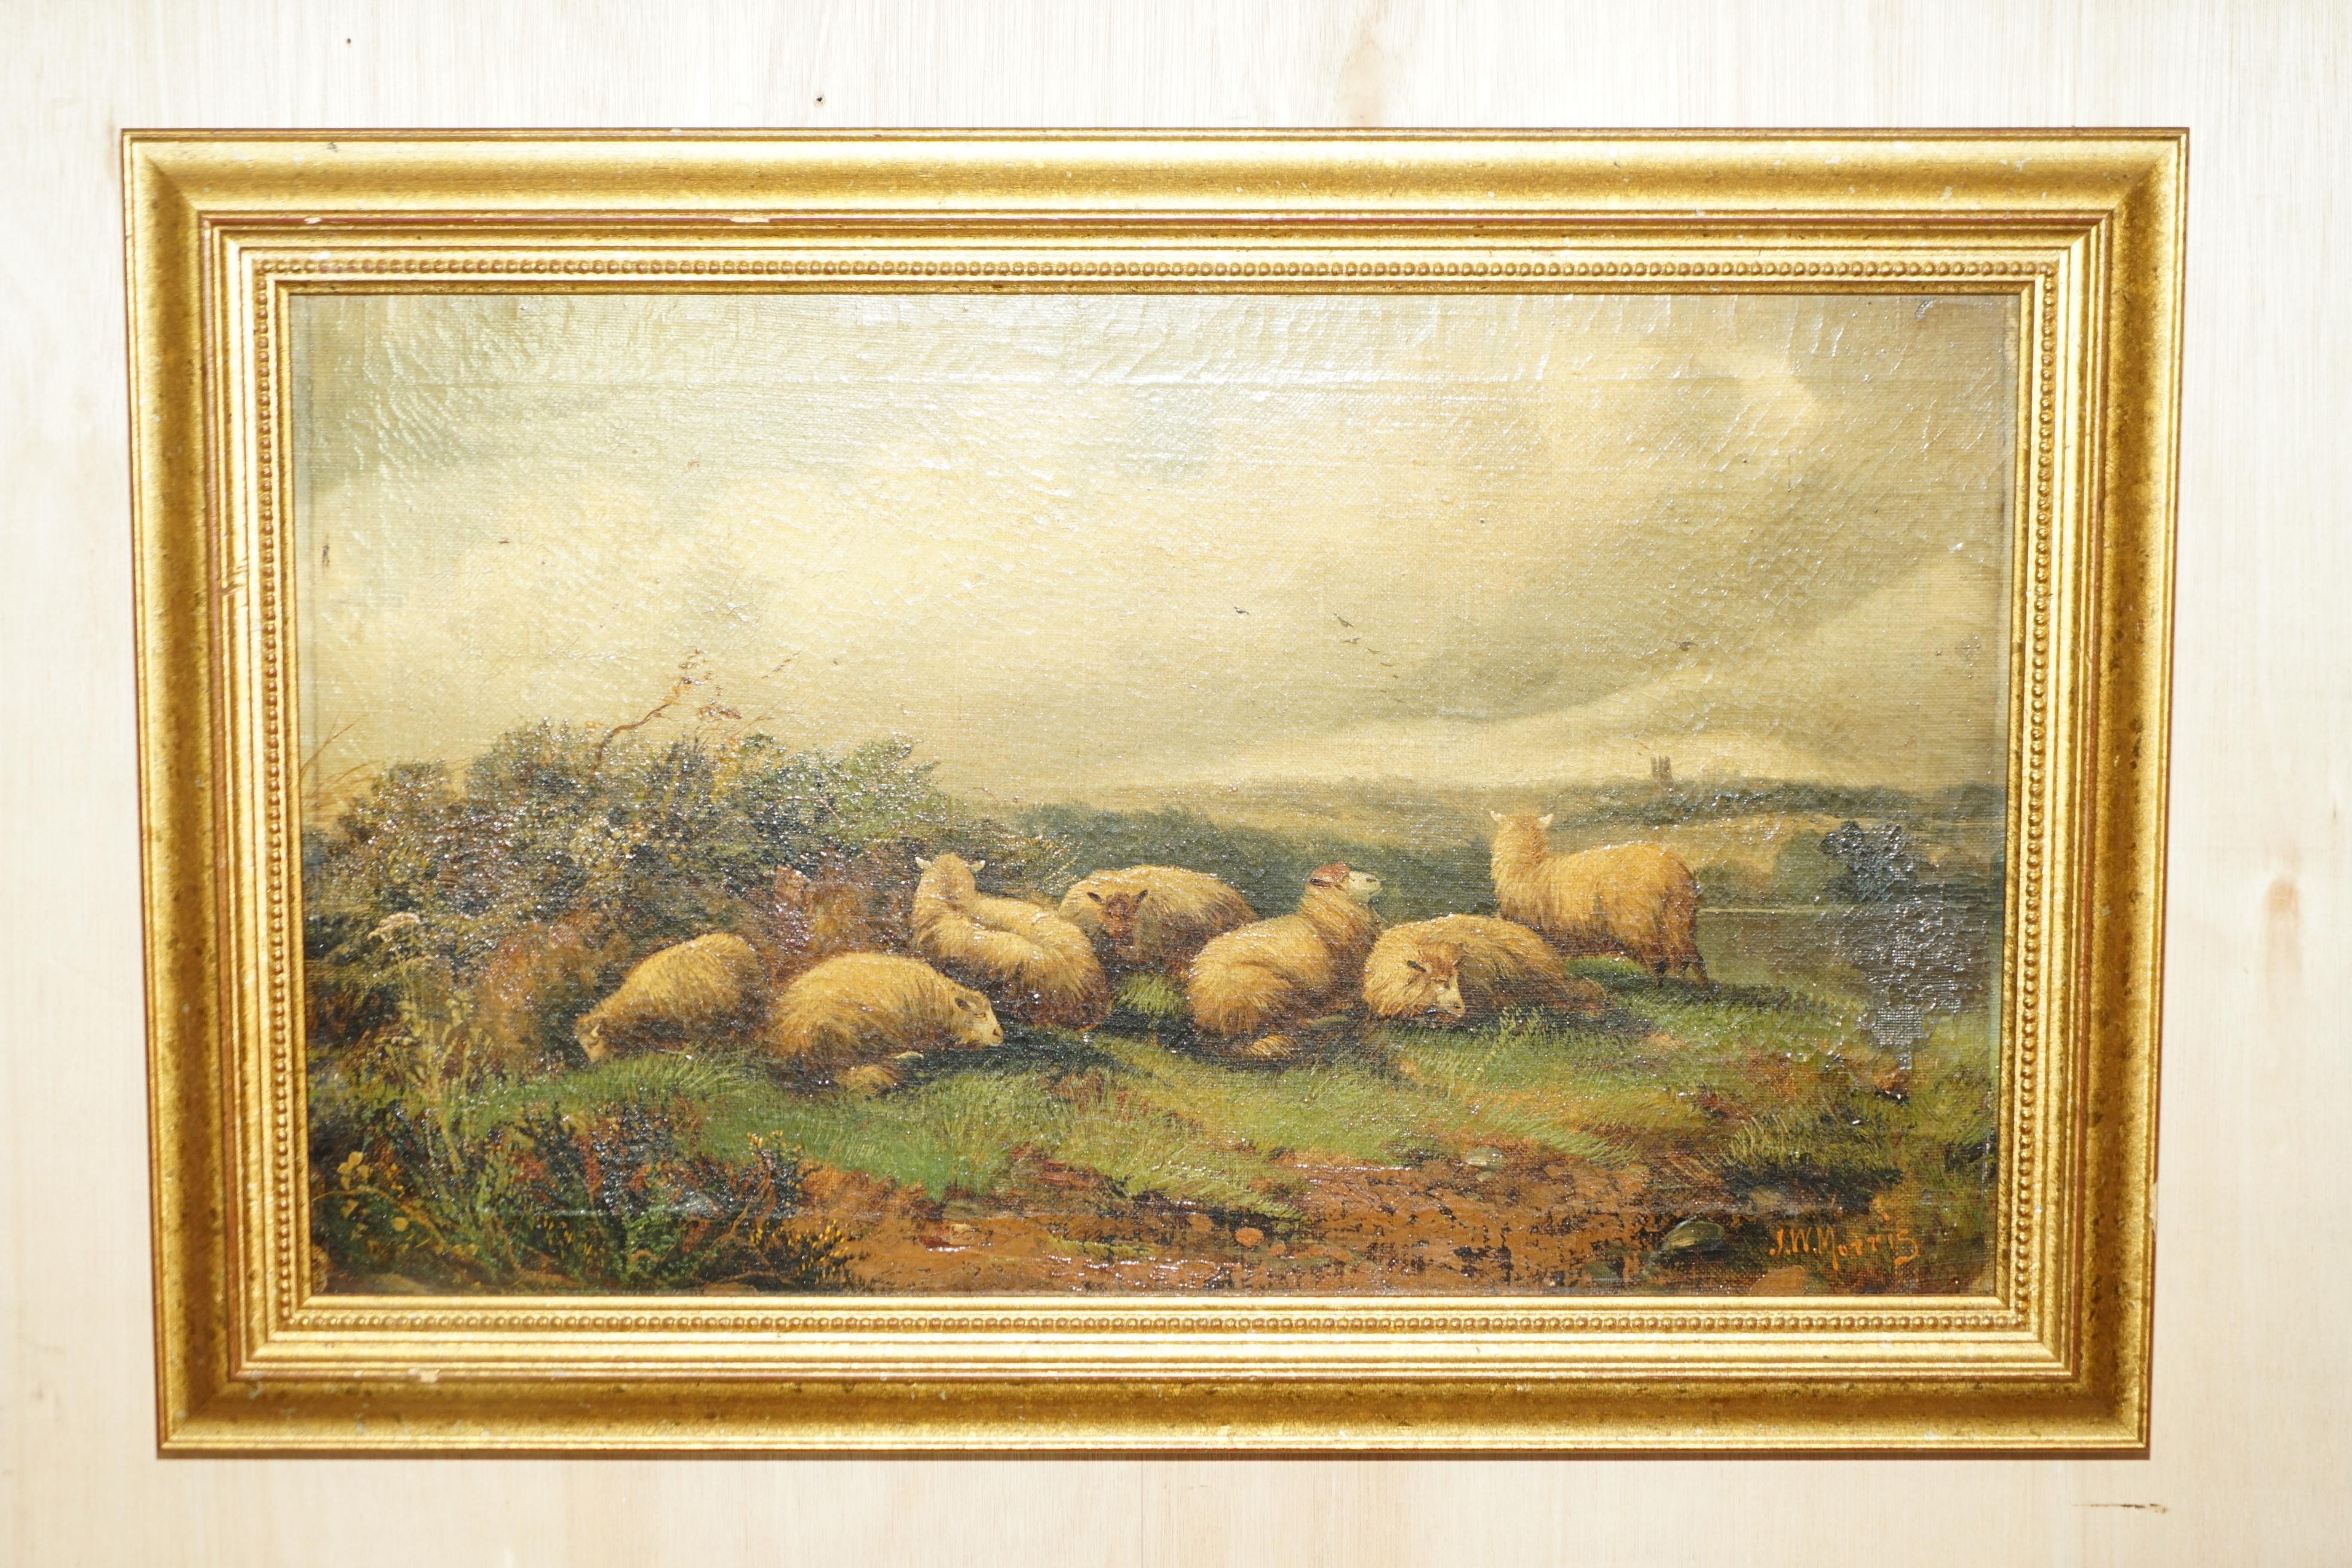 Royal House Antiques

Royal House Antiques a le plaisir d'offrir à la vente cette paire de peintures à l'huile originales de l'époque victorienne signées John W Morris représentant des moutons dans un paysage agricole.

Cette paire est